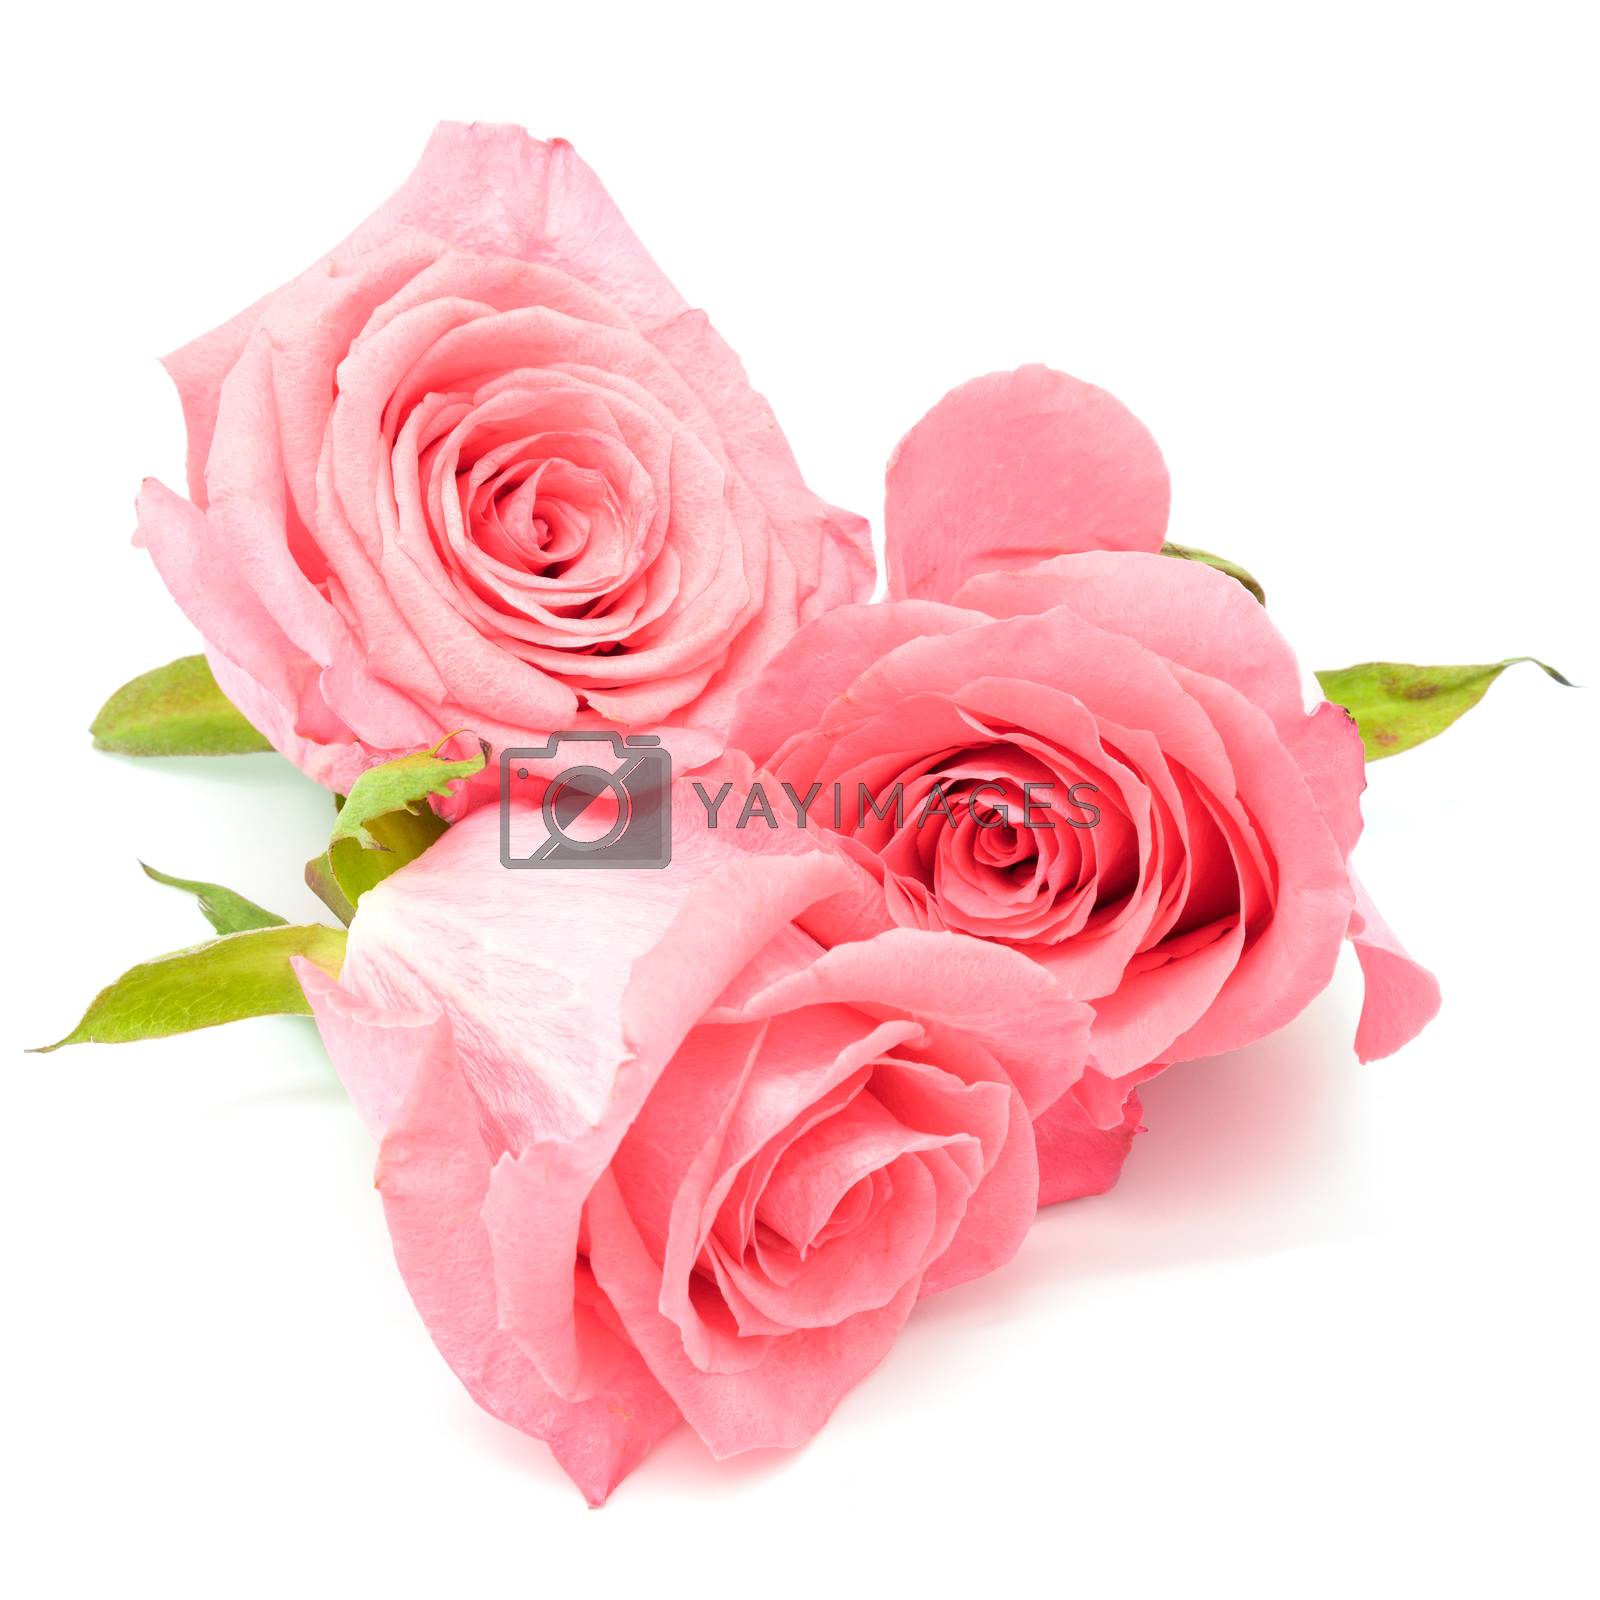 Royalty free image of pink rose by panuruangjan